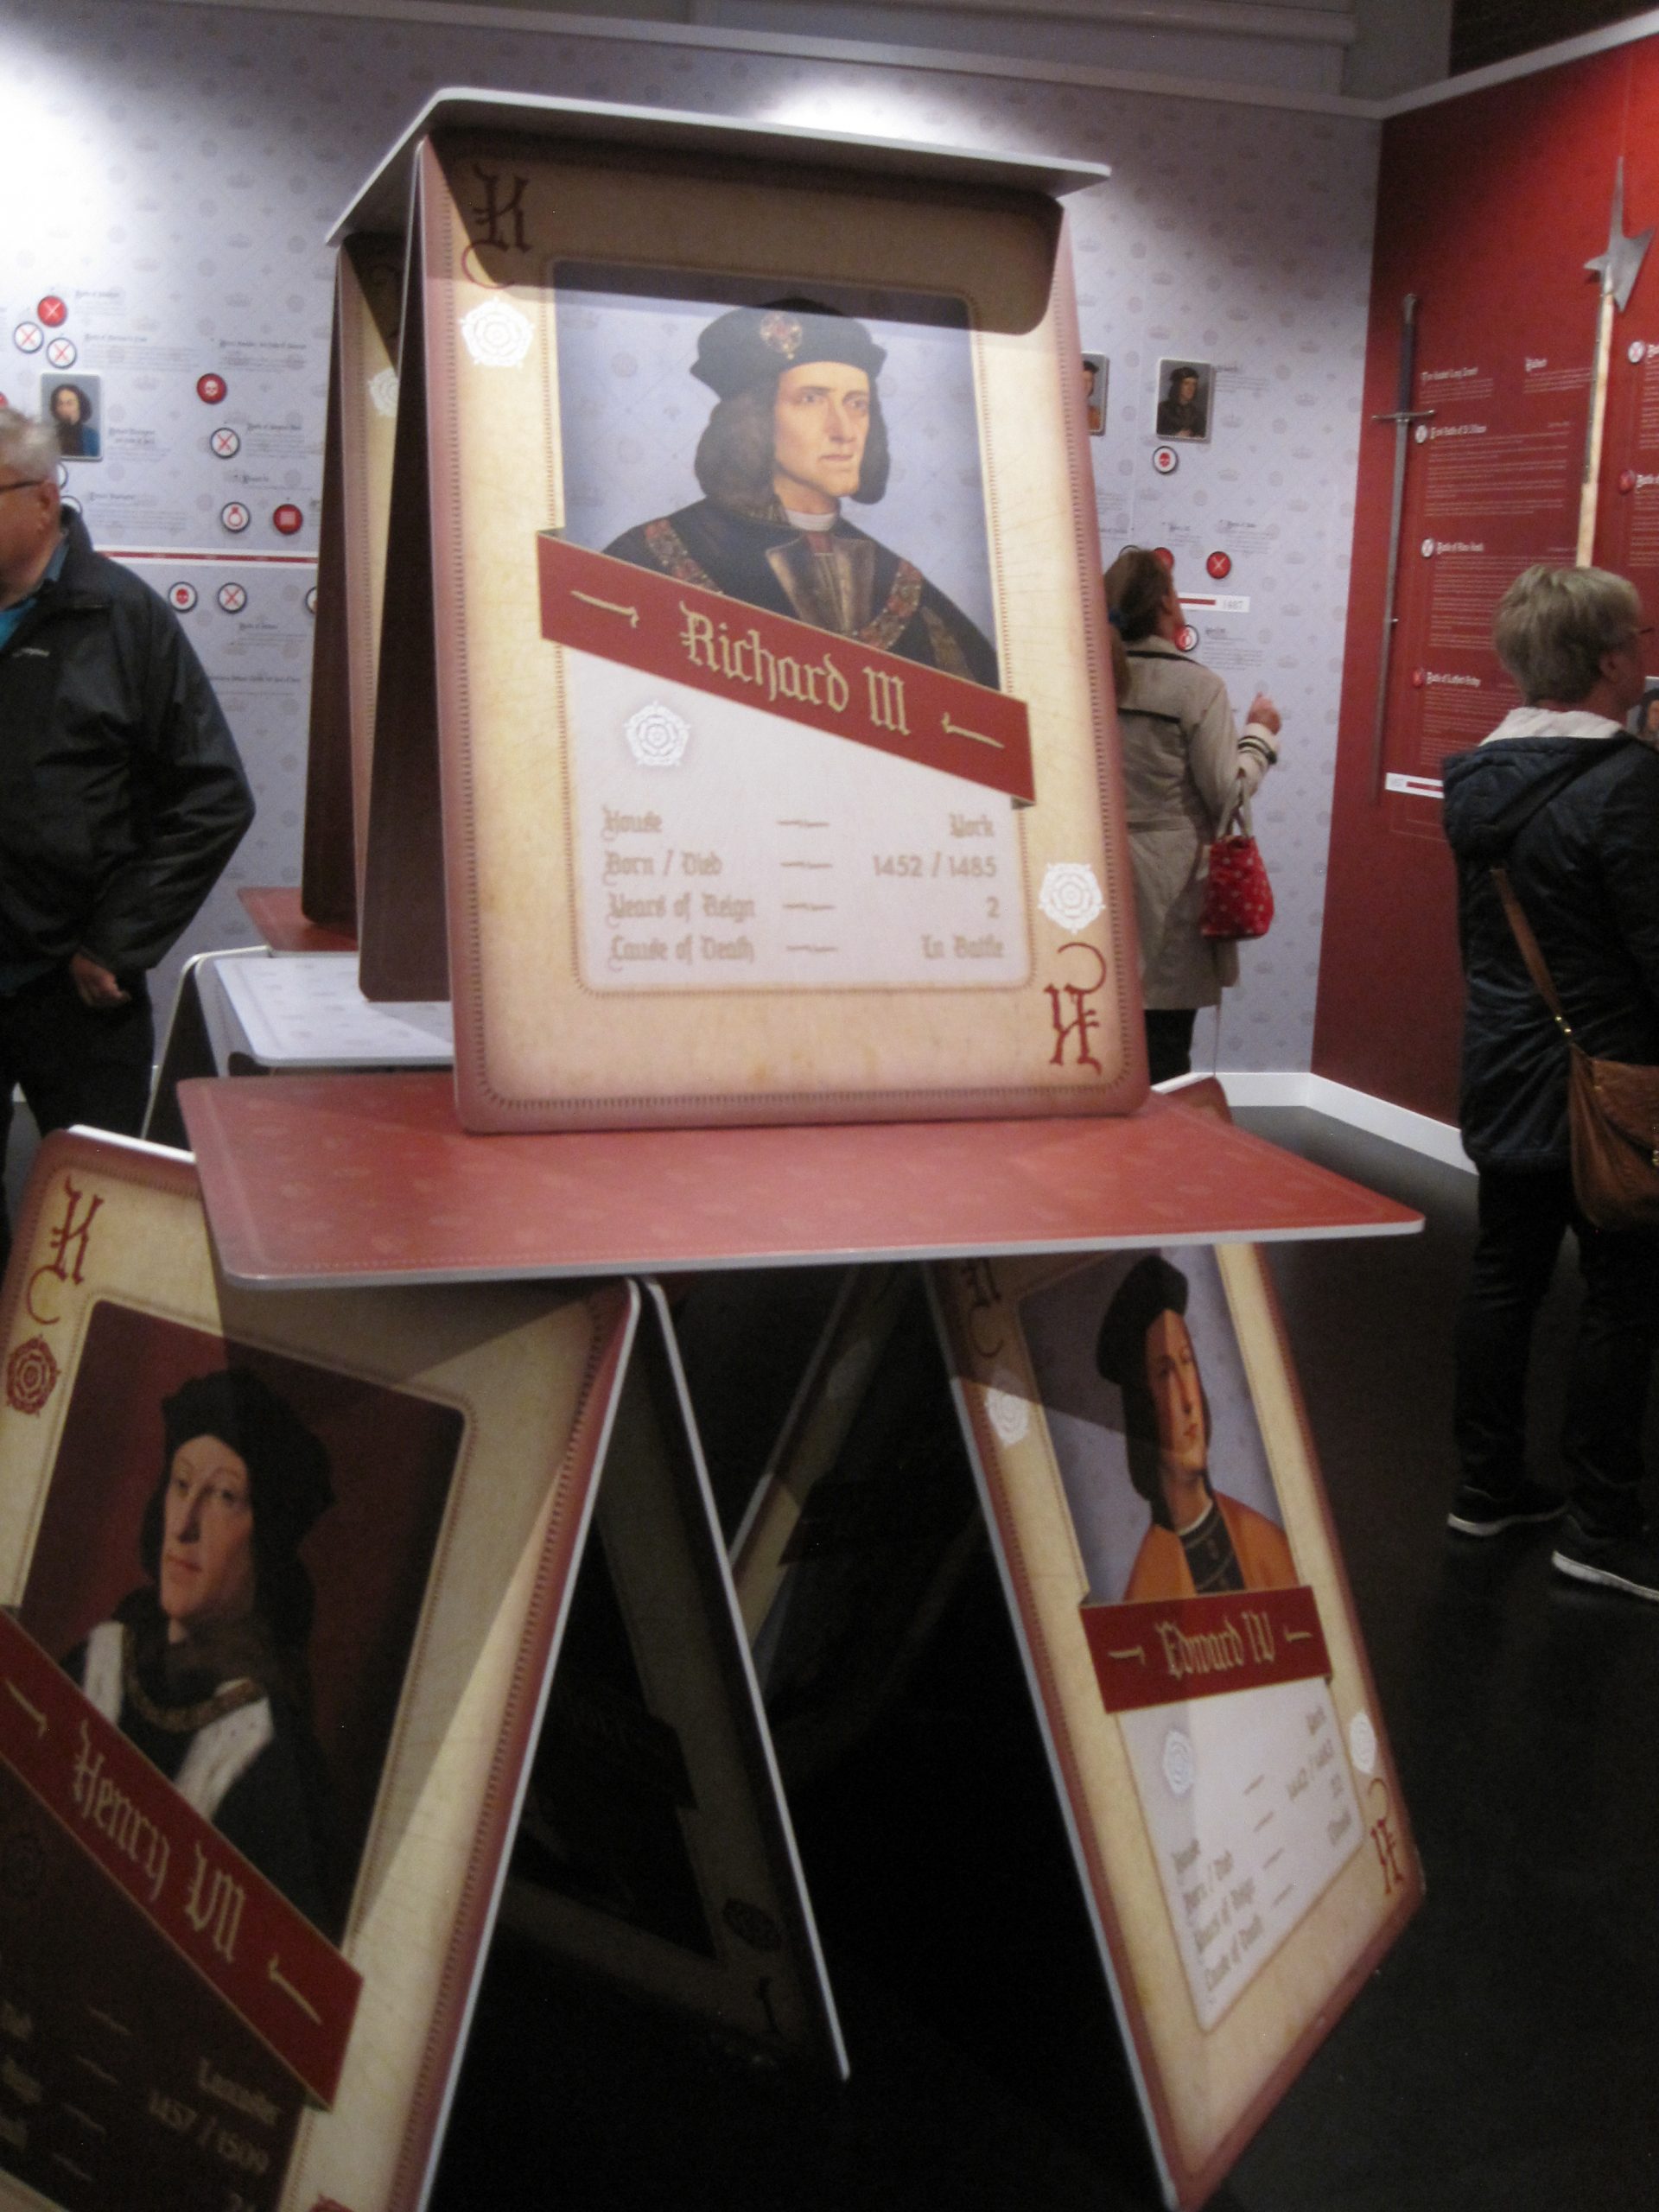 King Richard III Exhibition - photo by Juliamaud